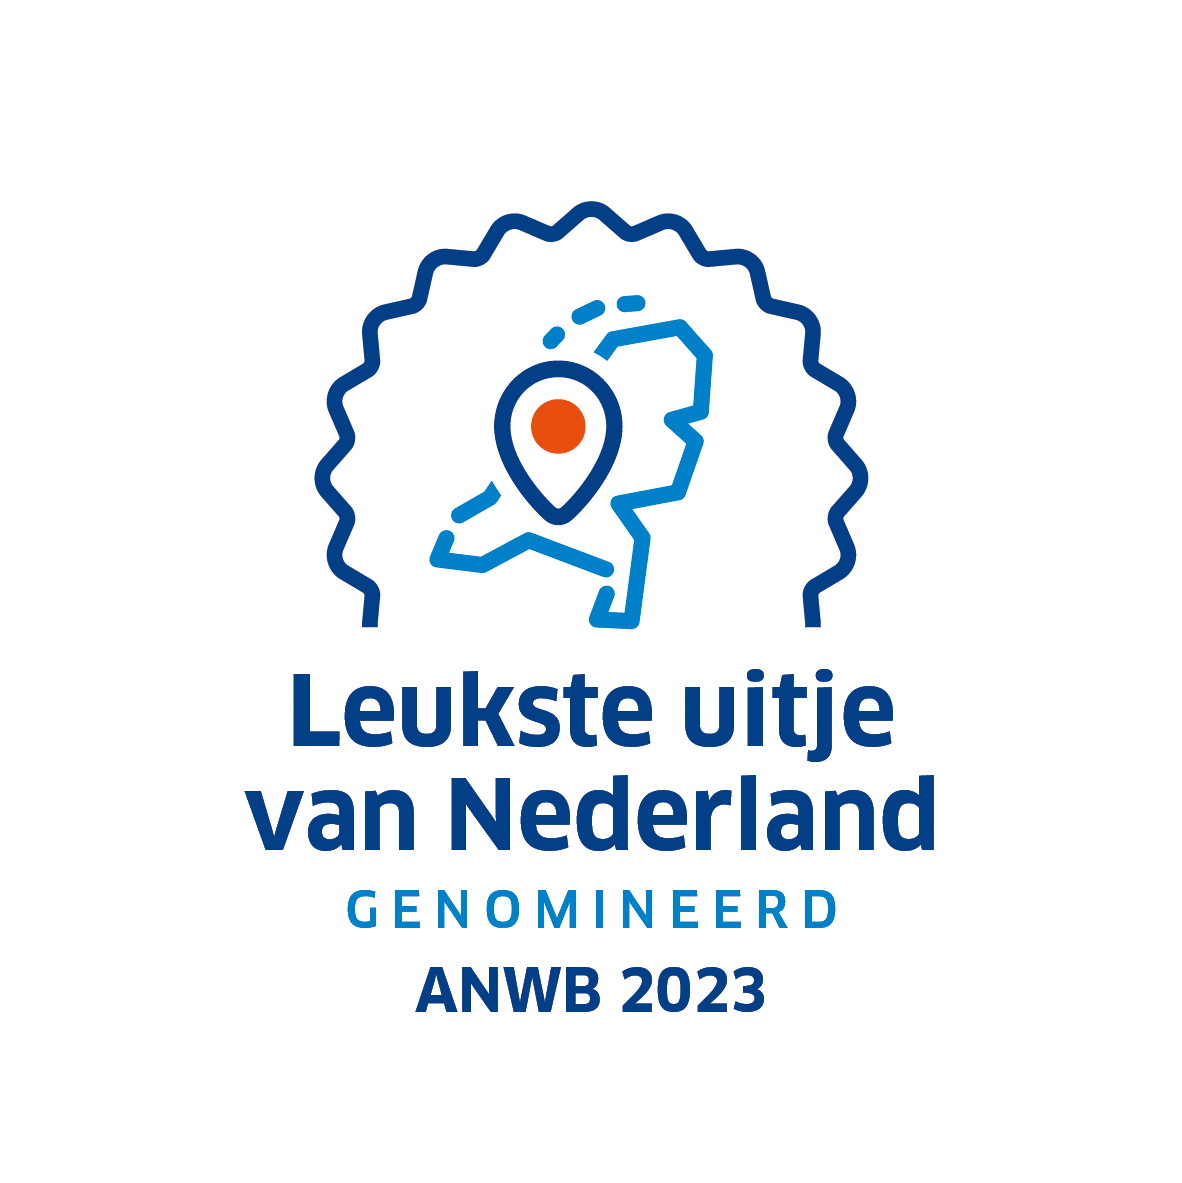 anwb_leukste_uitje_van_nederland_genomineerd_rgb.png